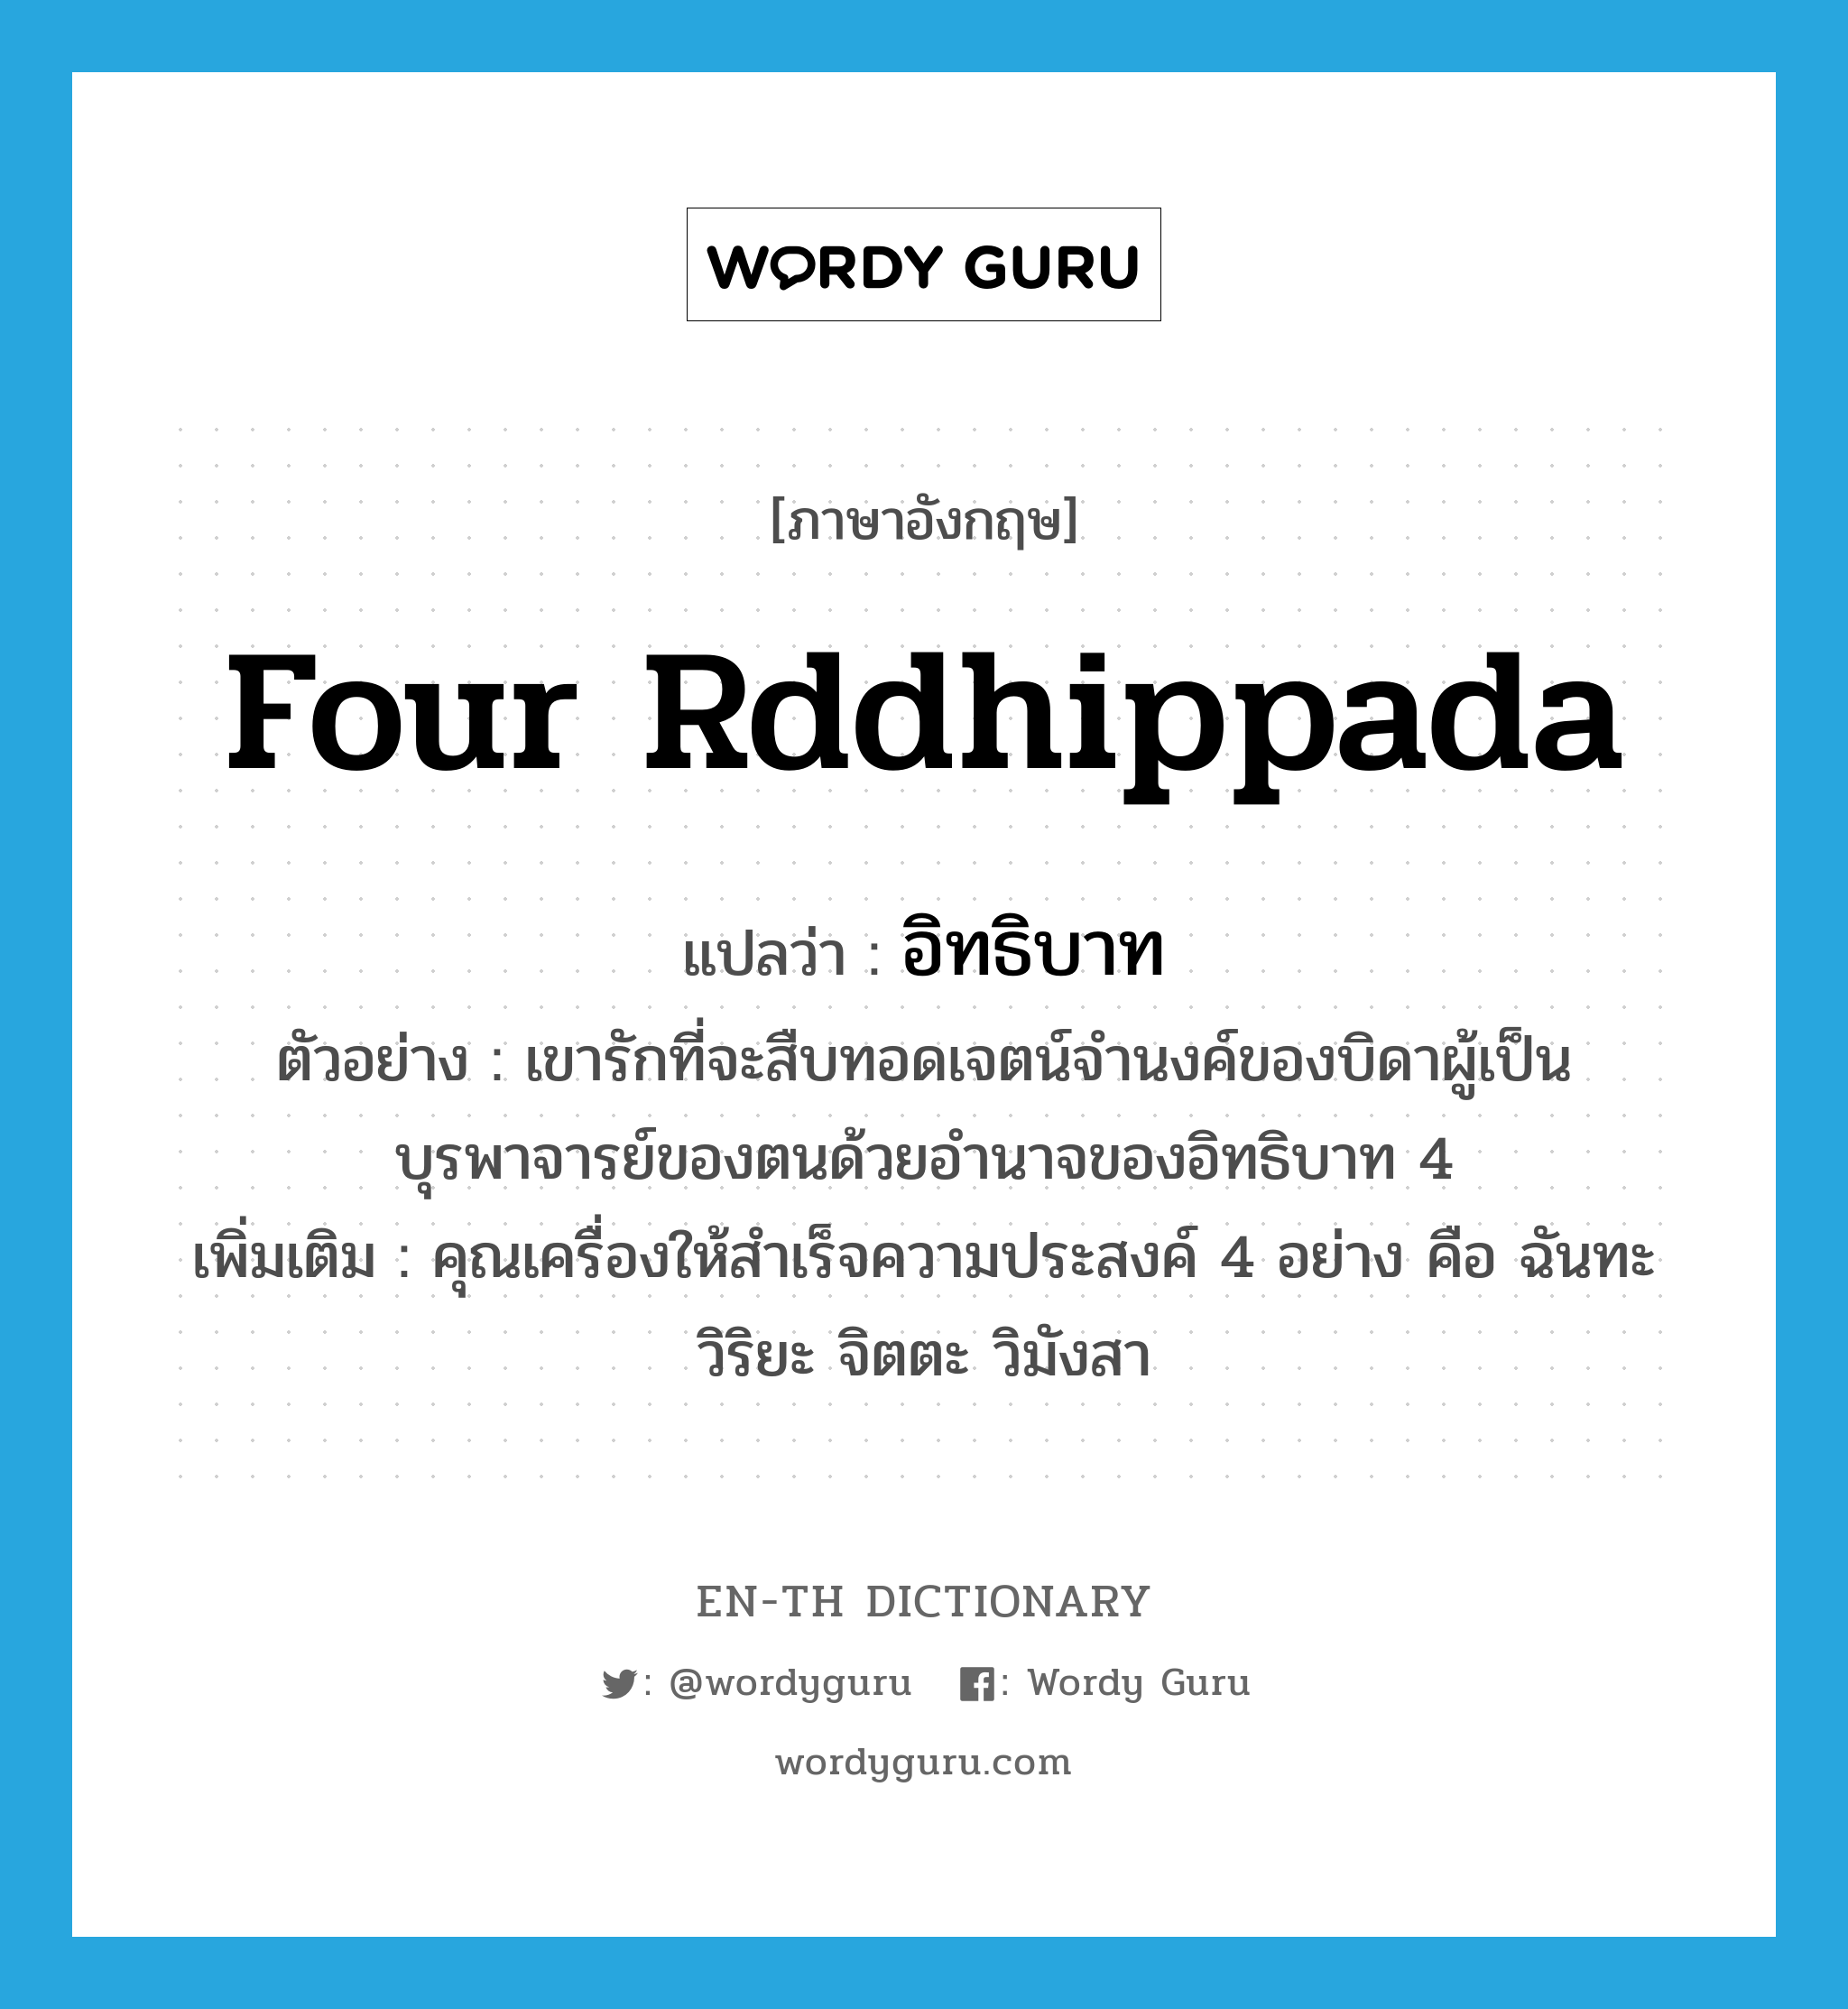 Four Rddhippada แปลว่า?, คำศัพท์ภาษาอังกฤษ Four Rddhippada แปลว่า อิทธิบาท ประเภท N ตัวอย่าง เขารักที่จะสืบทอดเจตน์จำนงค์ของบิดาผู้เป็นบุรพาจารย์ของตนด้วยอำนาจของอิทธิบาท 4 เพิ่มเติม คุณเครื่องให้สำเร็จความประสงค์ 4 อย่าง คือ ฉันทะ วิริยะ จิตตะ วิมังสา หมวด N